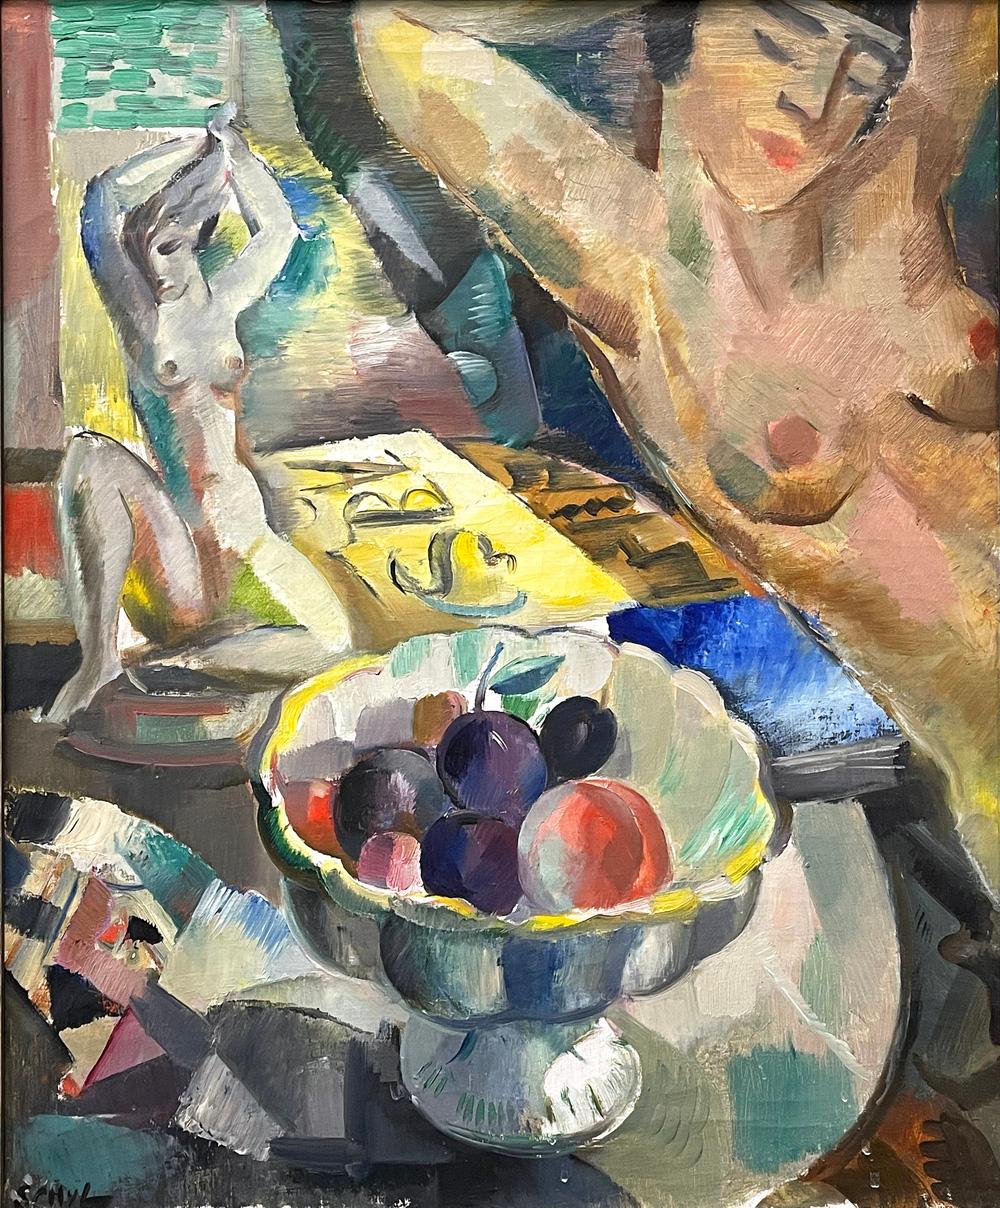 À notre avis, il s'agit de la plus belle œuvre jamais peinte par Jules Schyl, l'un des principaux modernistes suédois des années 1920 et 1930. Cette œuvre spectaculaire représente un nu féminin dans le quadrant supérieur droit, accompagné d'une